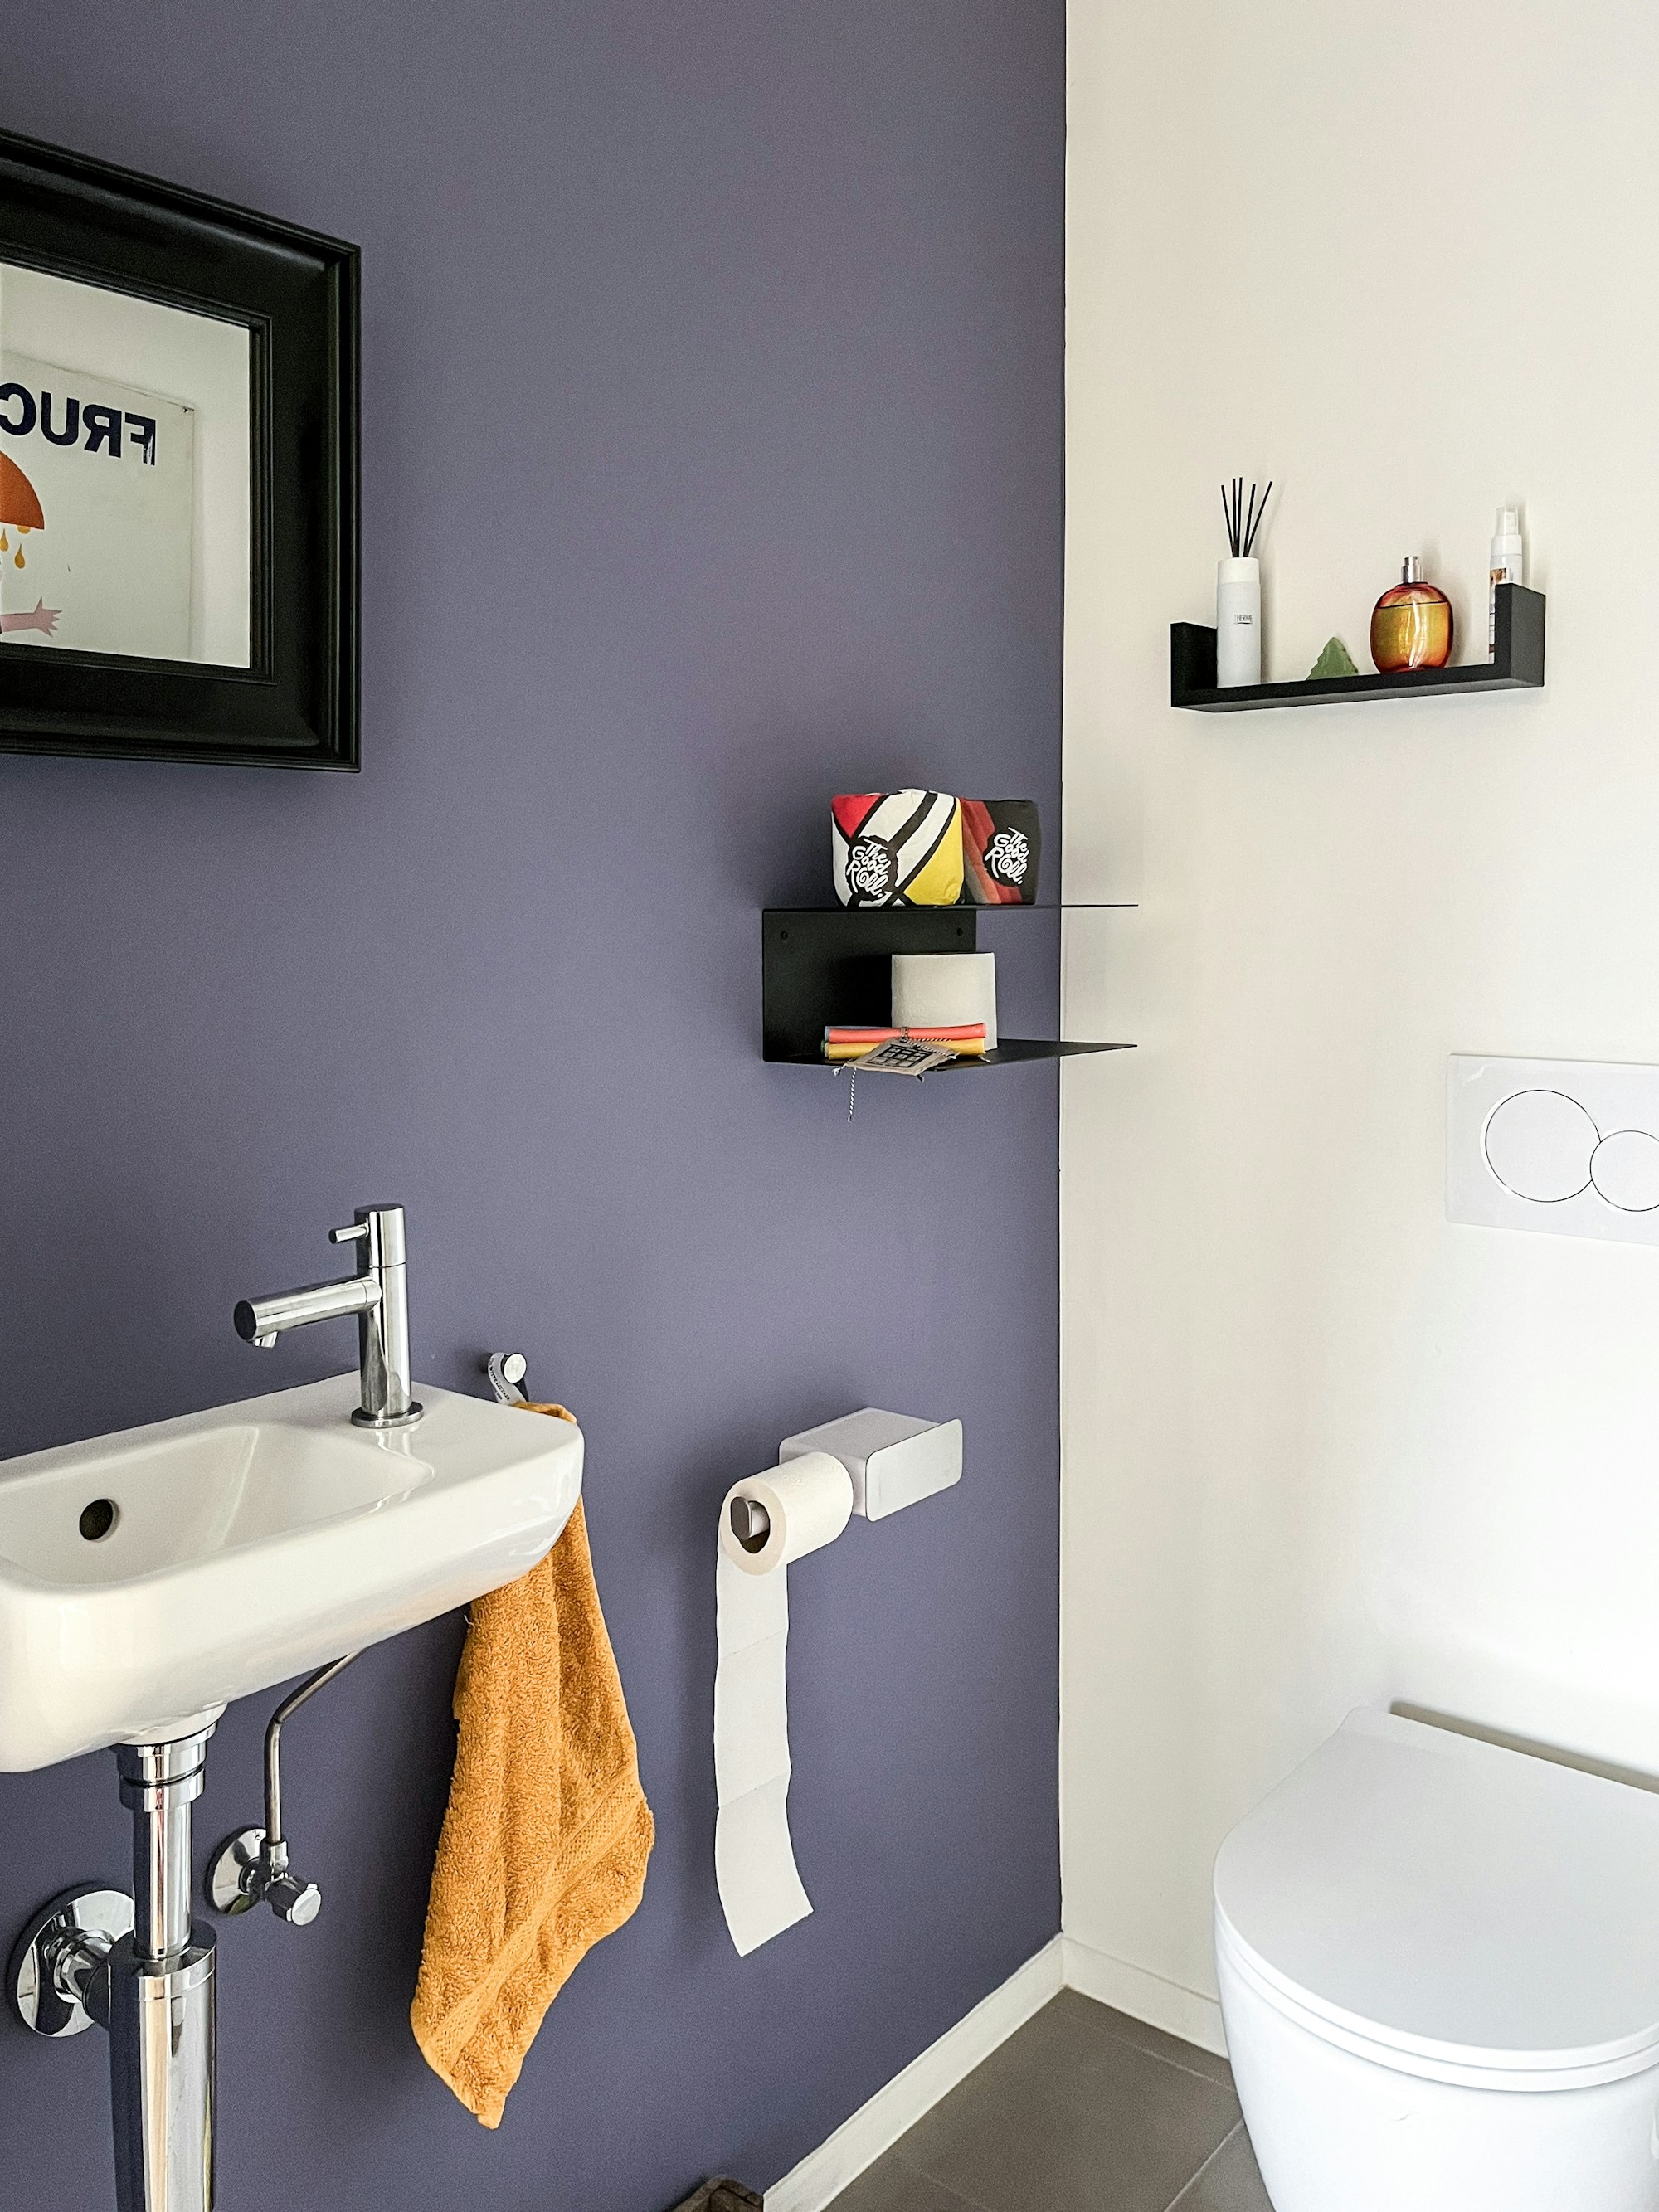 Toilet in een Skilpod prefab woning, accentmuur in paars en kleurrijke wanddecoratie